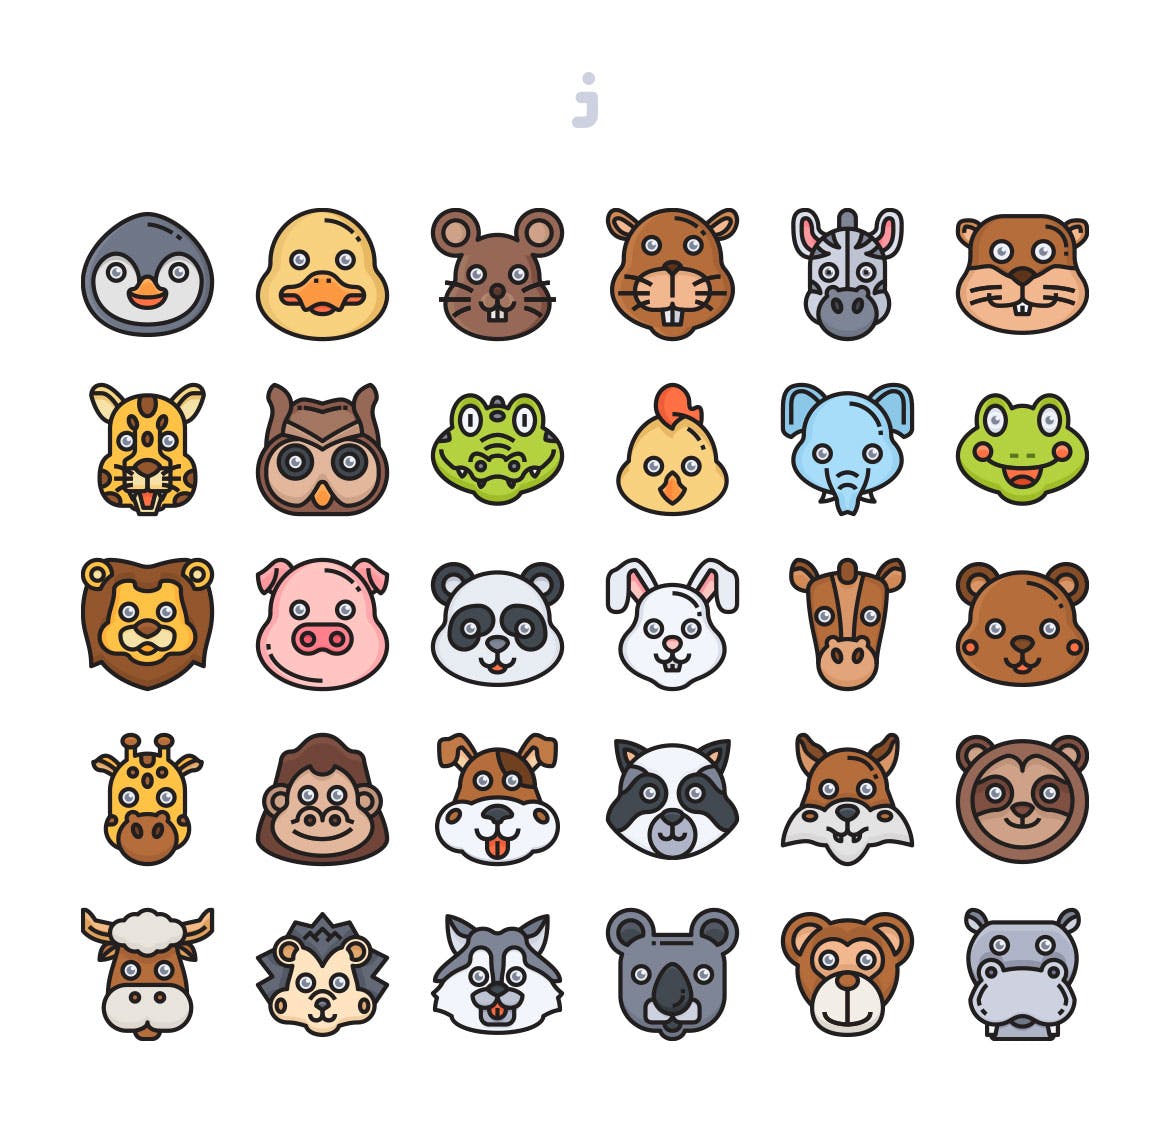 30枚动物手绘卡通头像彩色矢量图标 30 Animal Avatar Icons插图(1)